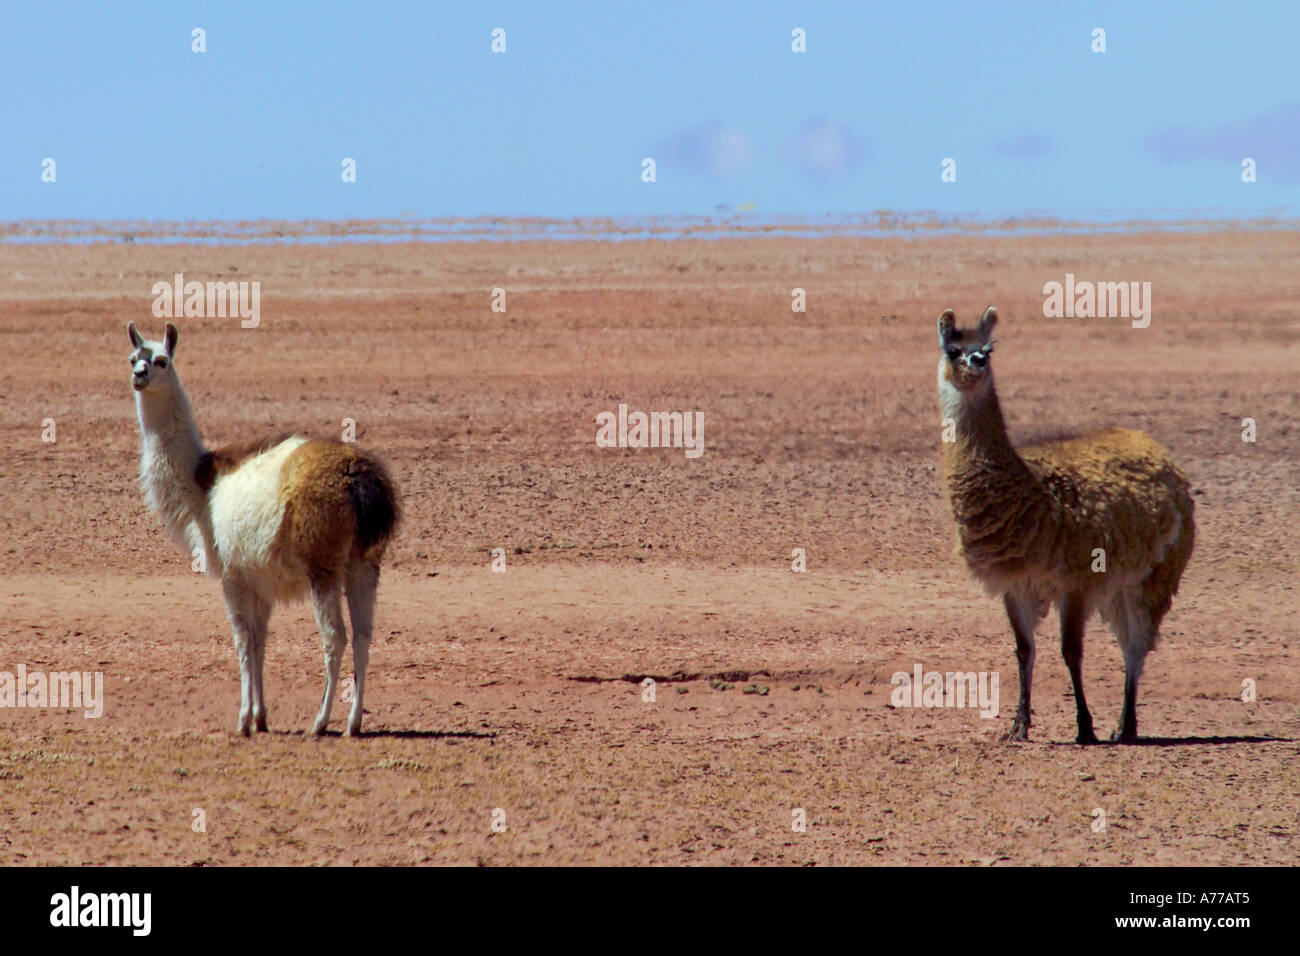 Two Guanaco's (Lama guanicoe) on the Peruvian Altiplano. Stock Photo